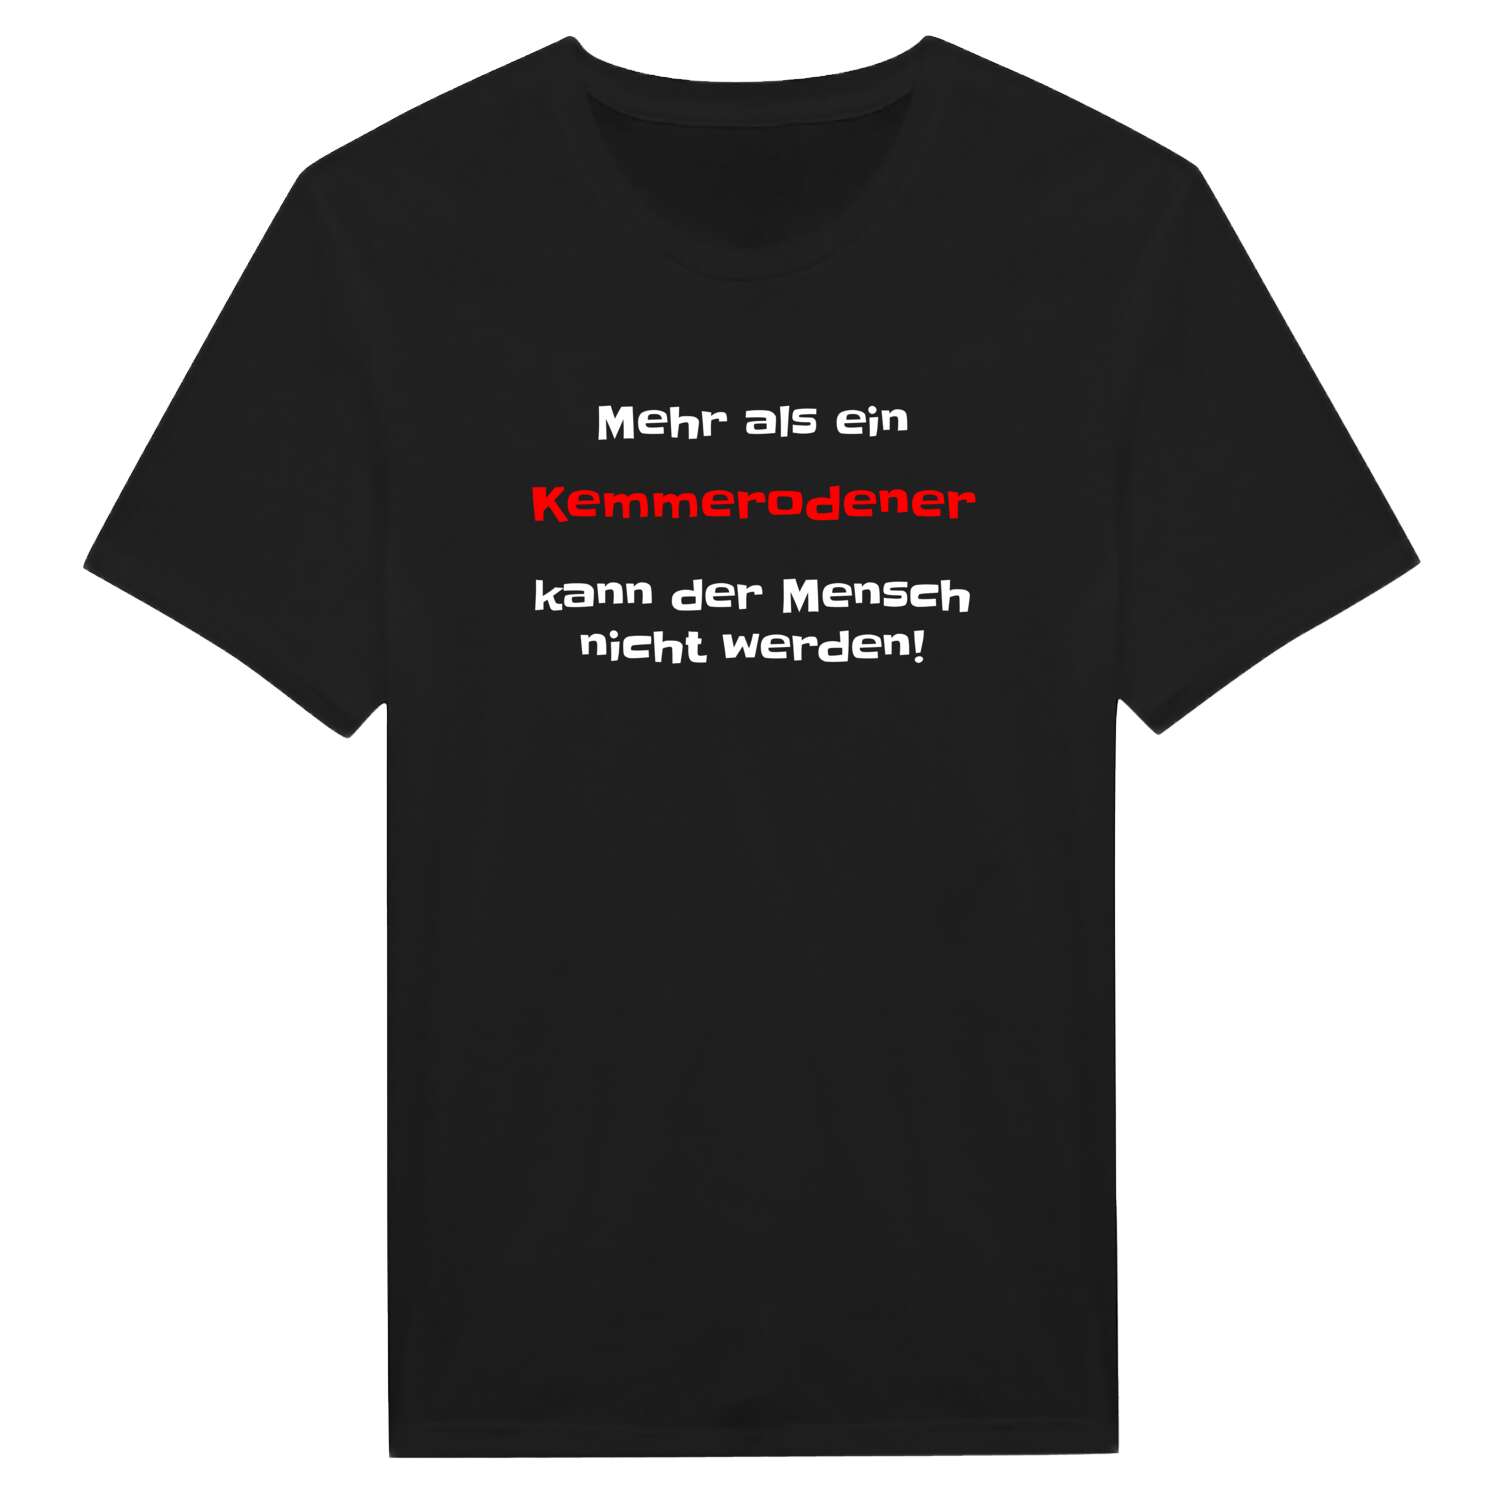 Kemmerode T-Shirt »Mehr als ein«